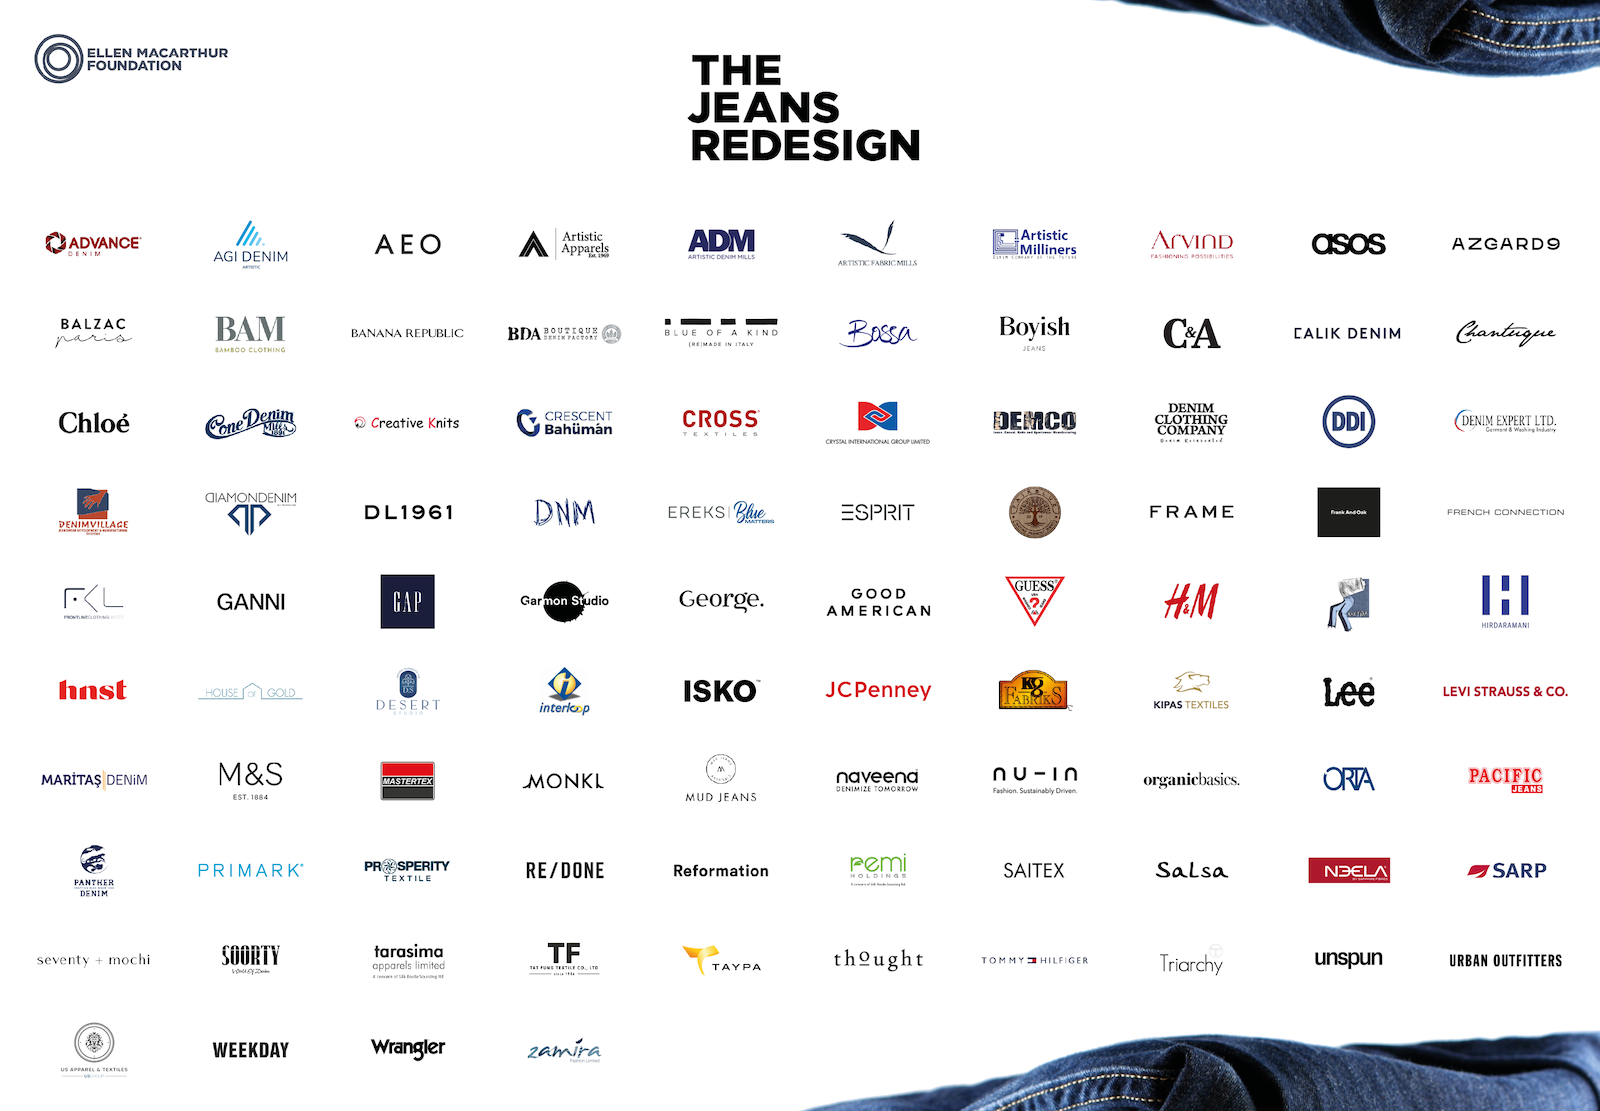 Denim Jeans Logo Vector Images (over 1,400)